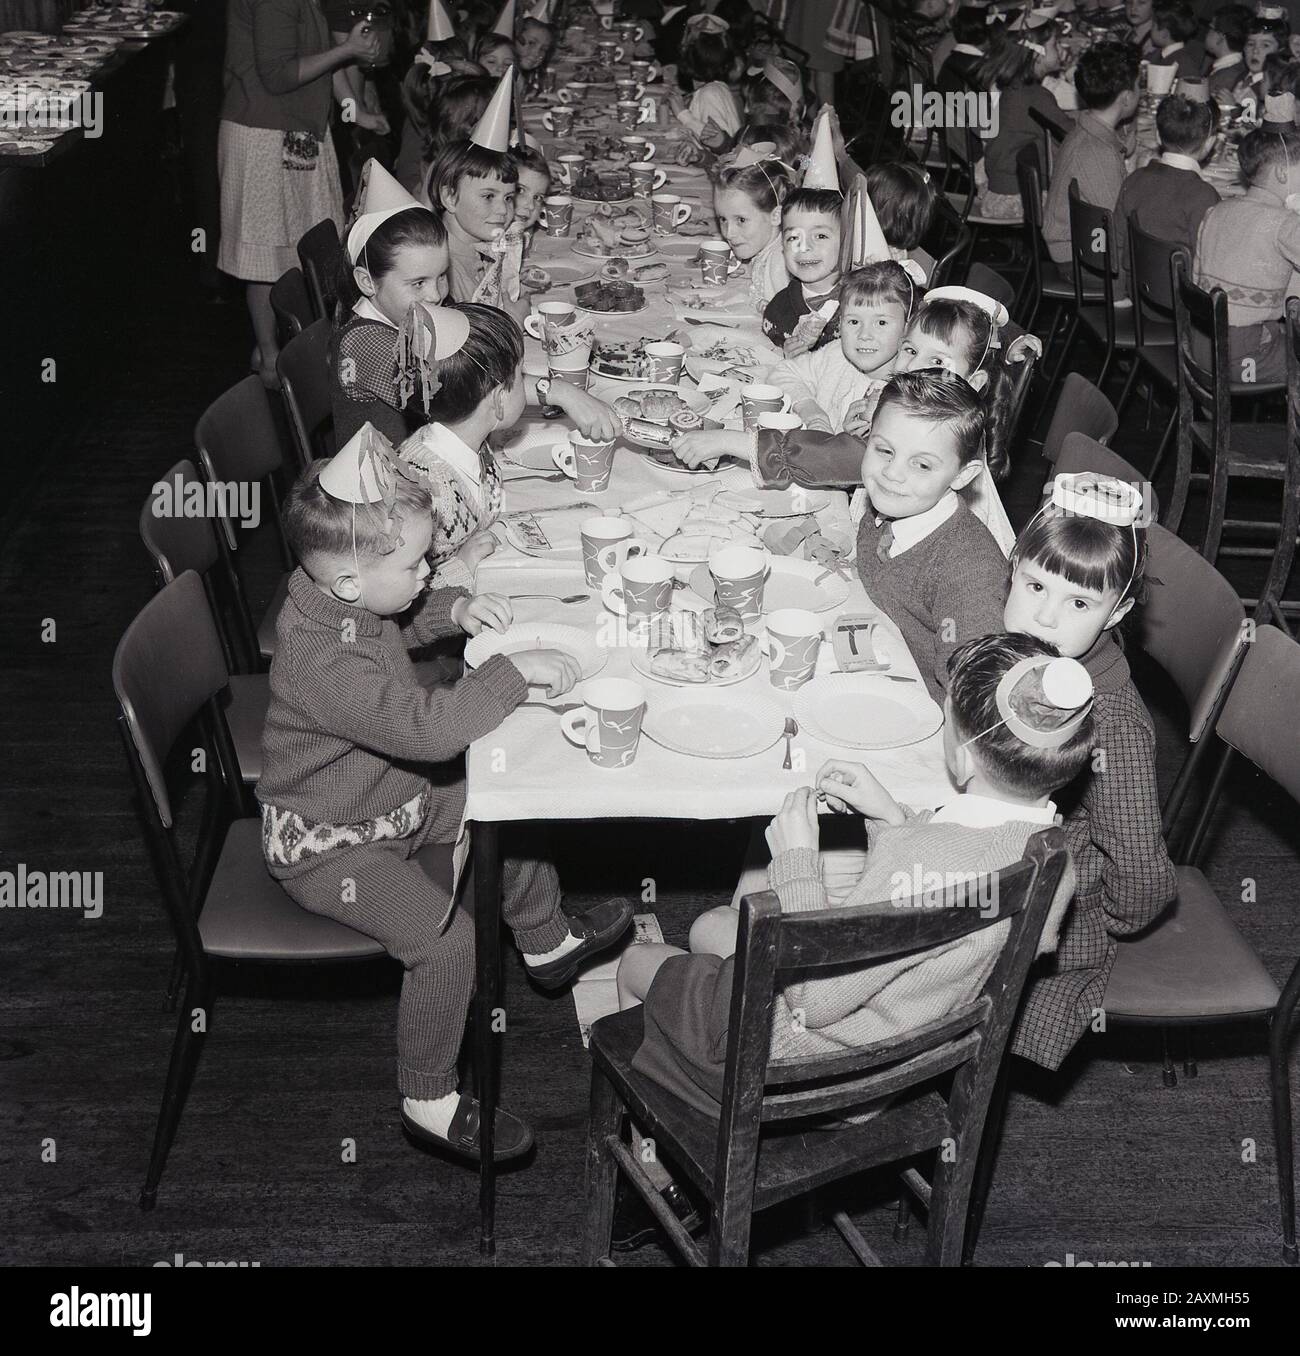 Années 1960, historique, dans une salle à manger, de jeunes écoliers dans des chapeaux de fête s'amusant ensemble à un repas de noël, Angleterre, Royaume-Uni Banque D'Images